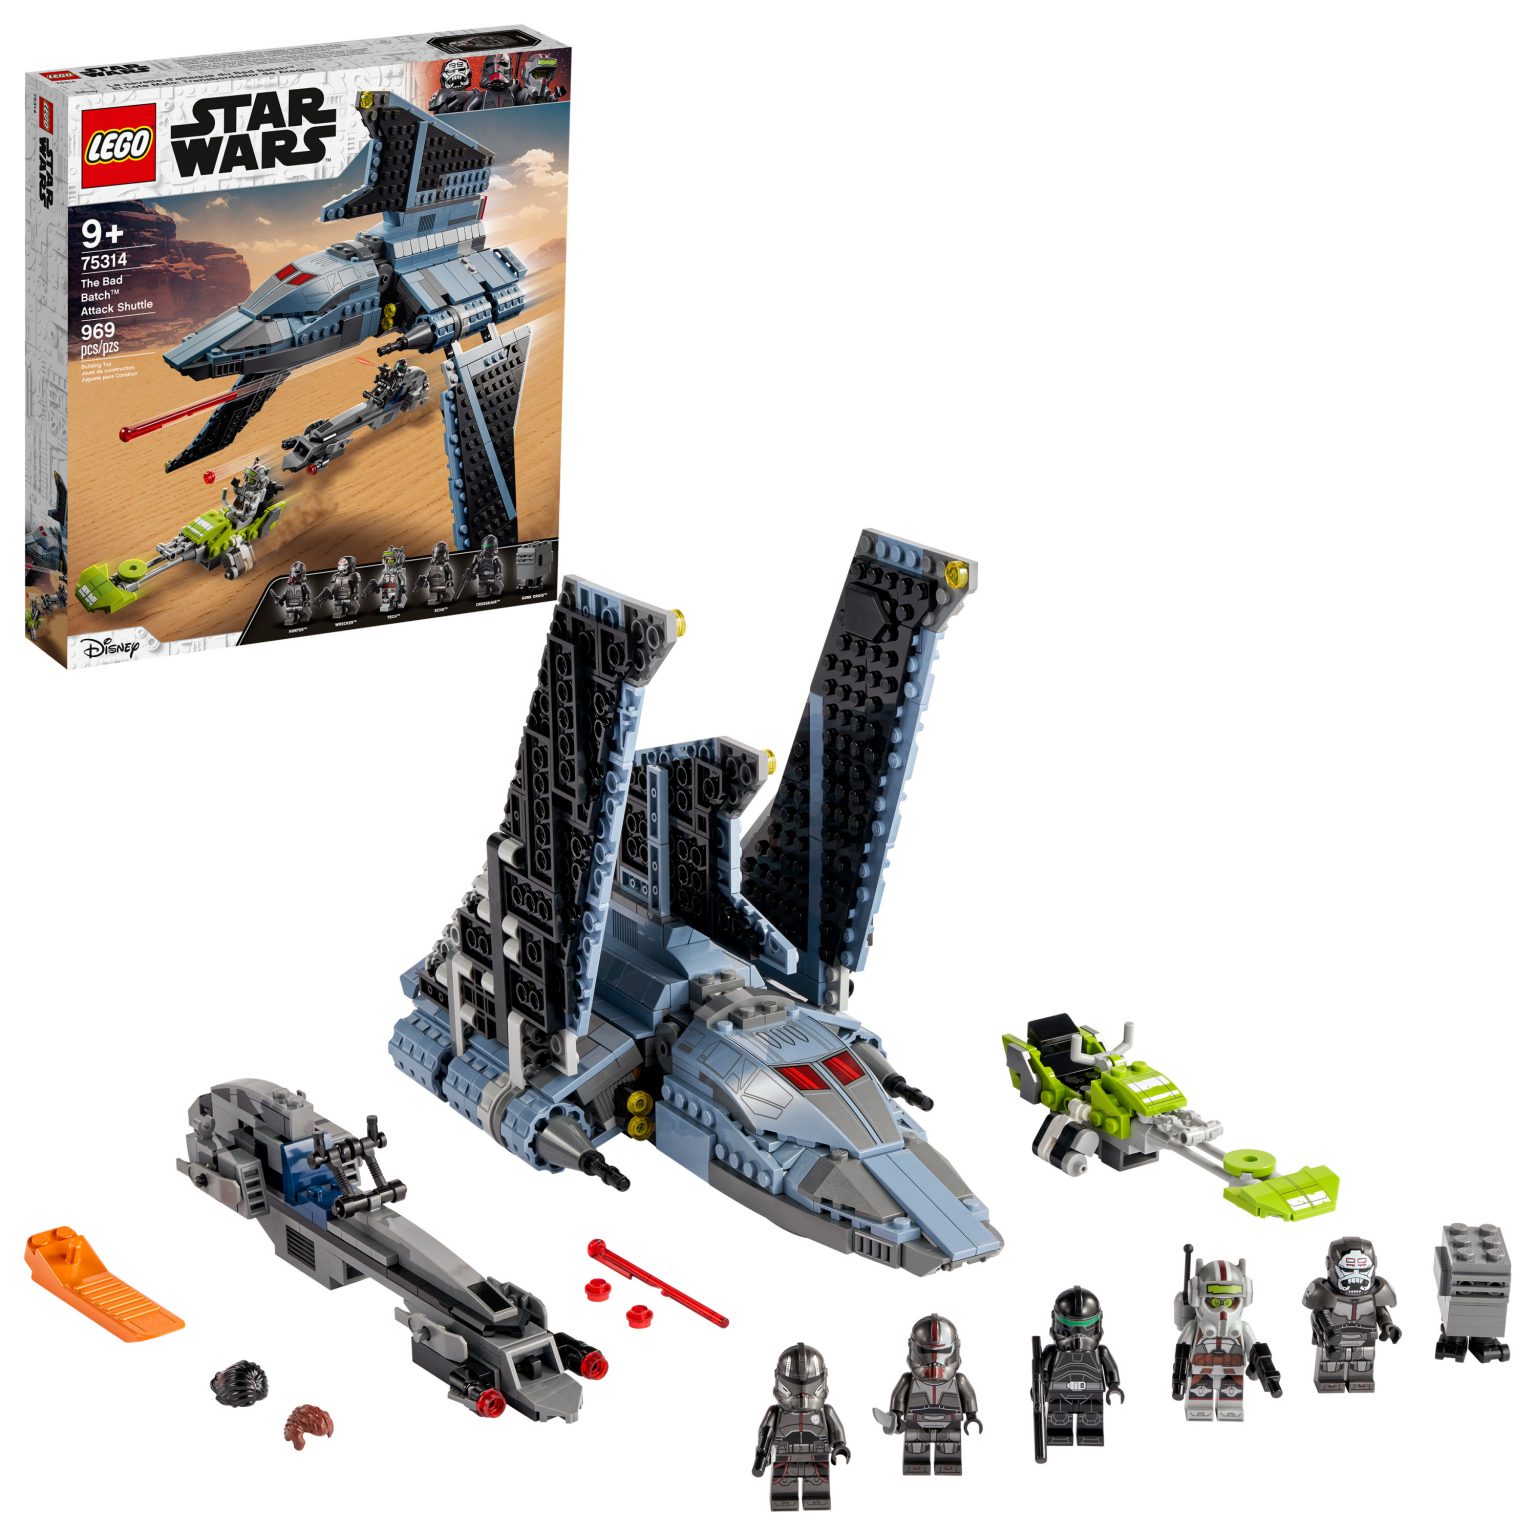 lego star wars bad batch shuttle